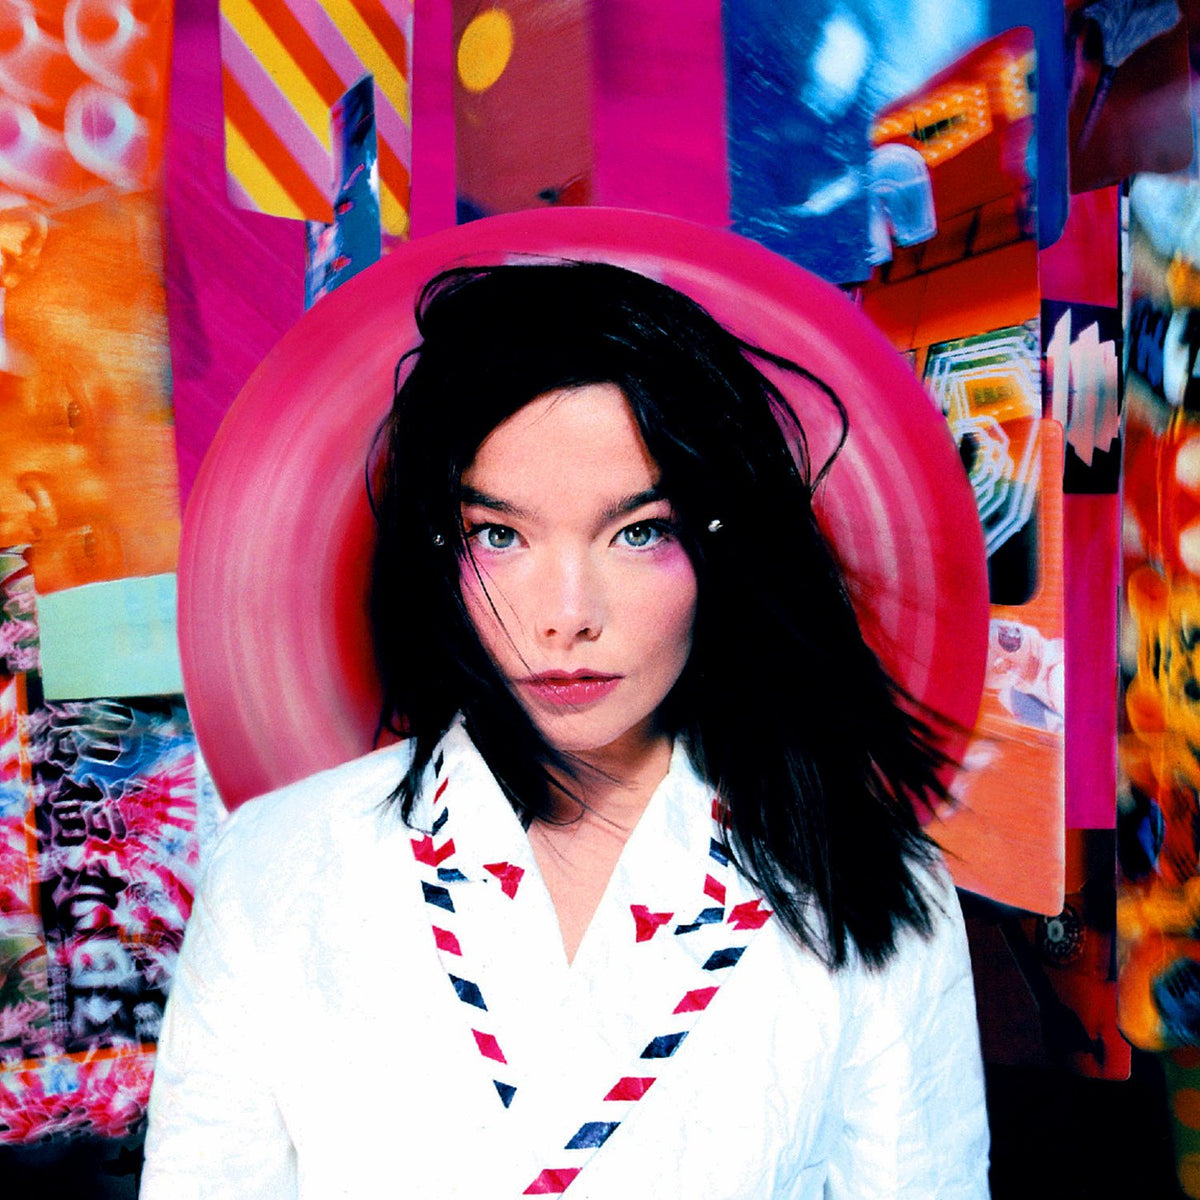 The 10 Best Björk Albums To Own On Vinyl - Vinyl Me, Please